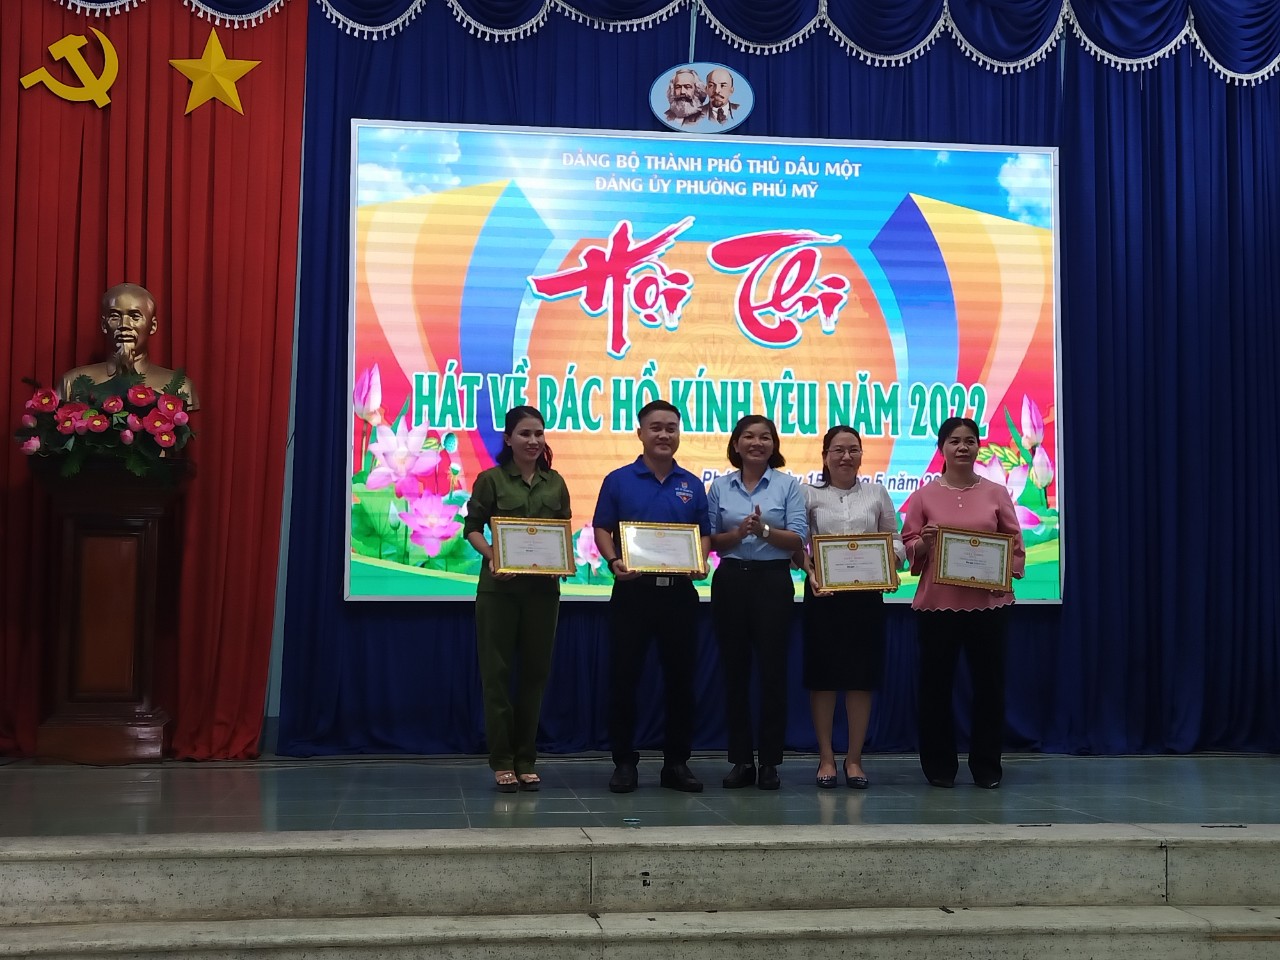 Trường THCS Phú Mỹ đạt giải ba toàn đoàn hội thi "Hát về Bác Hồ kính yêu" năm 2022